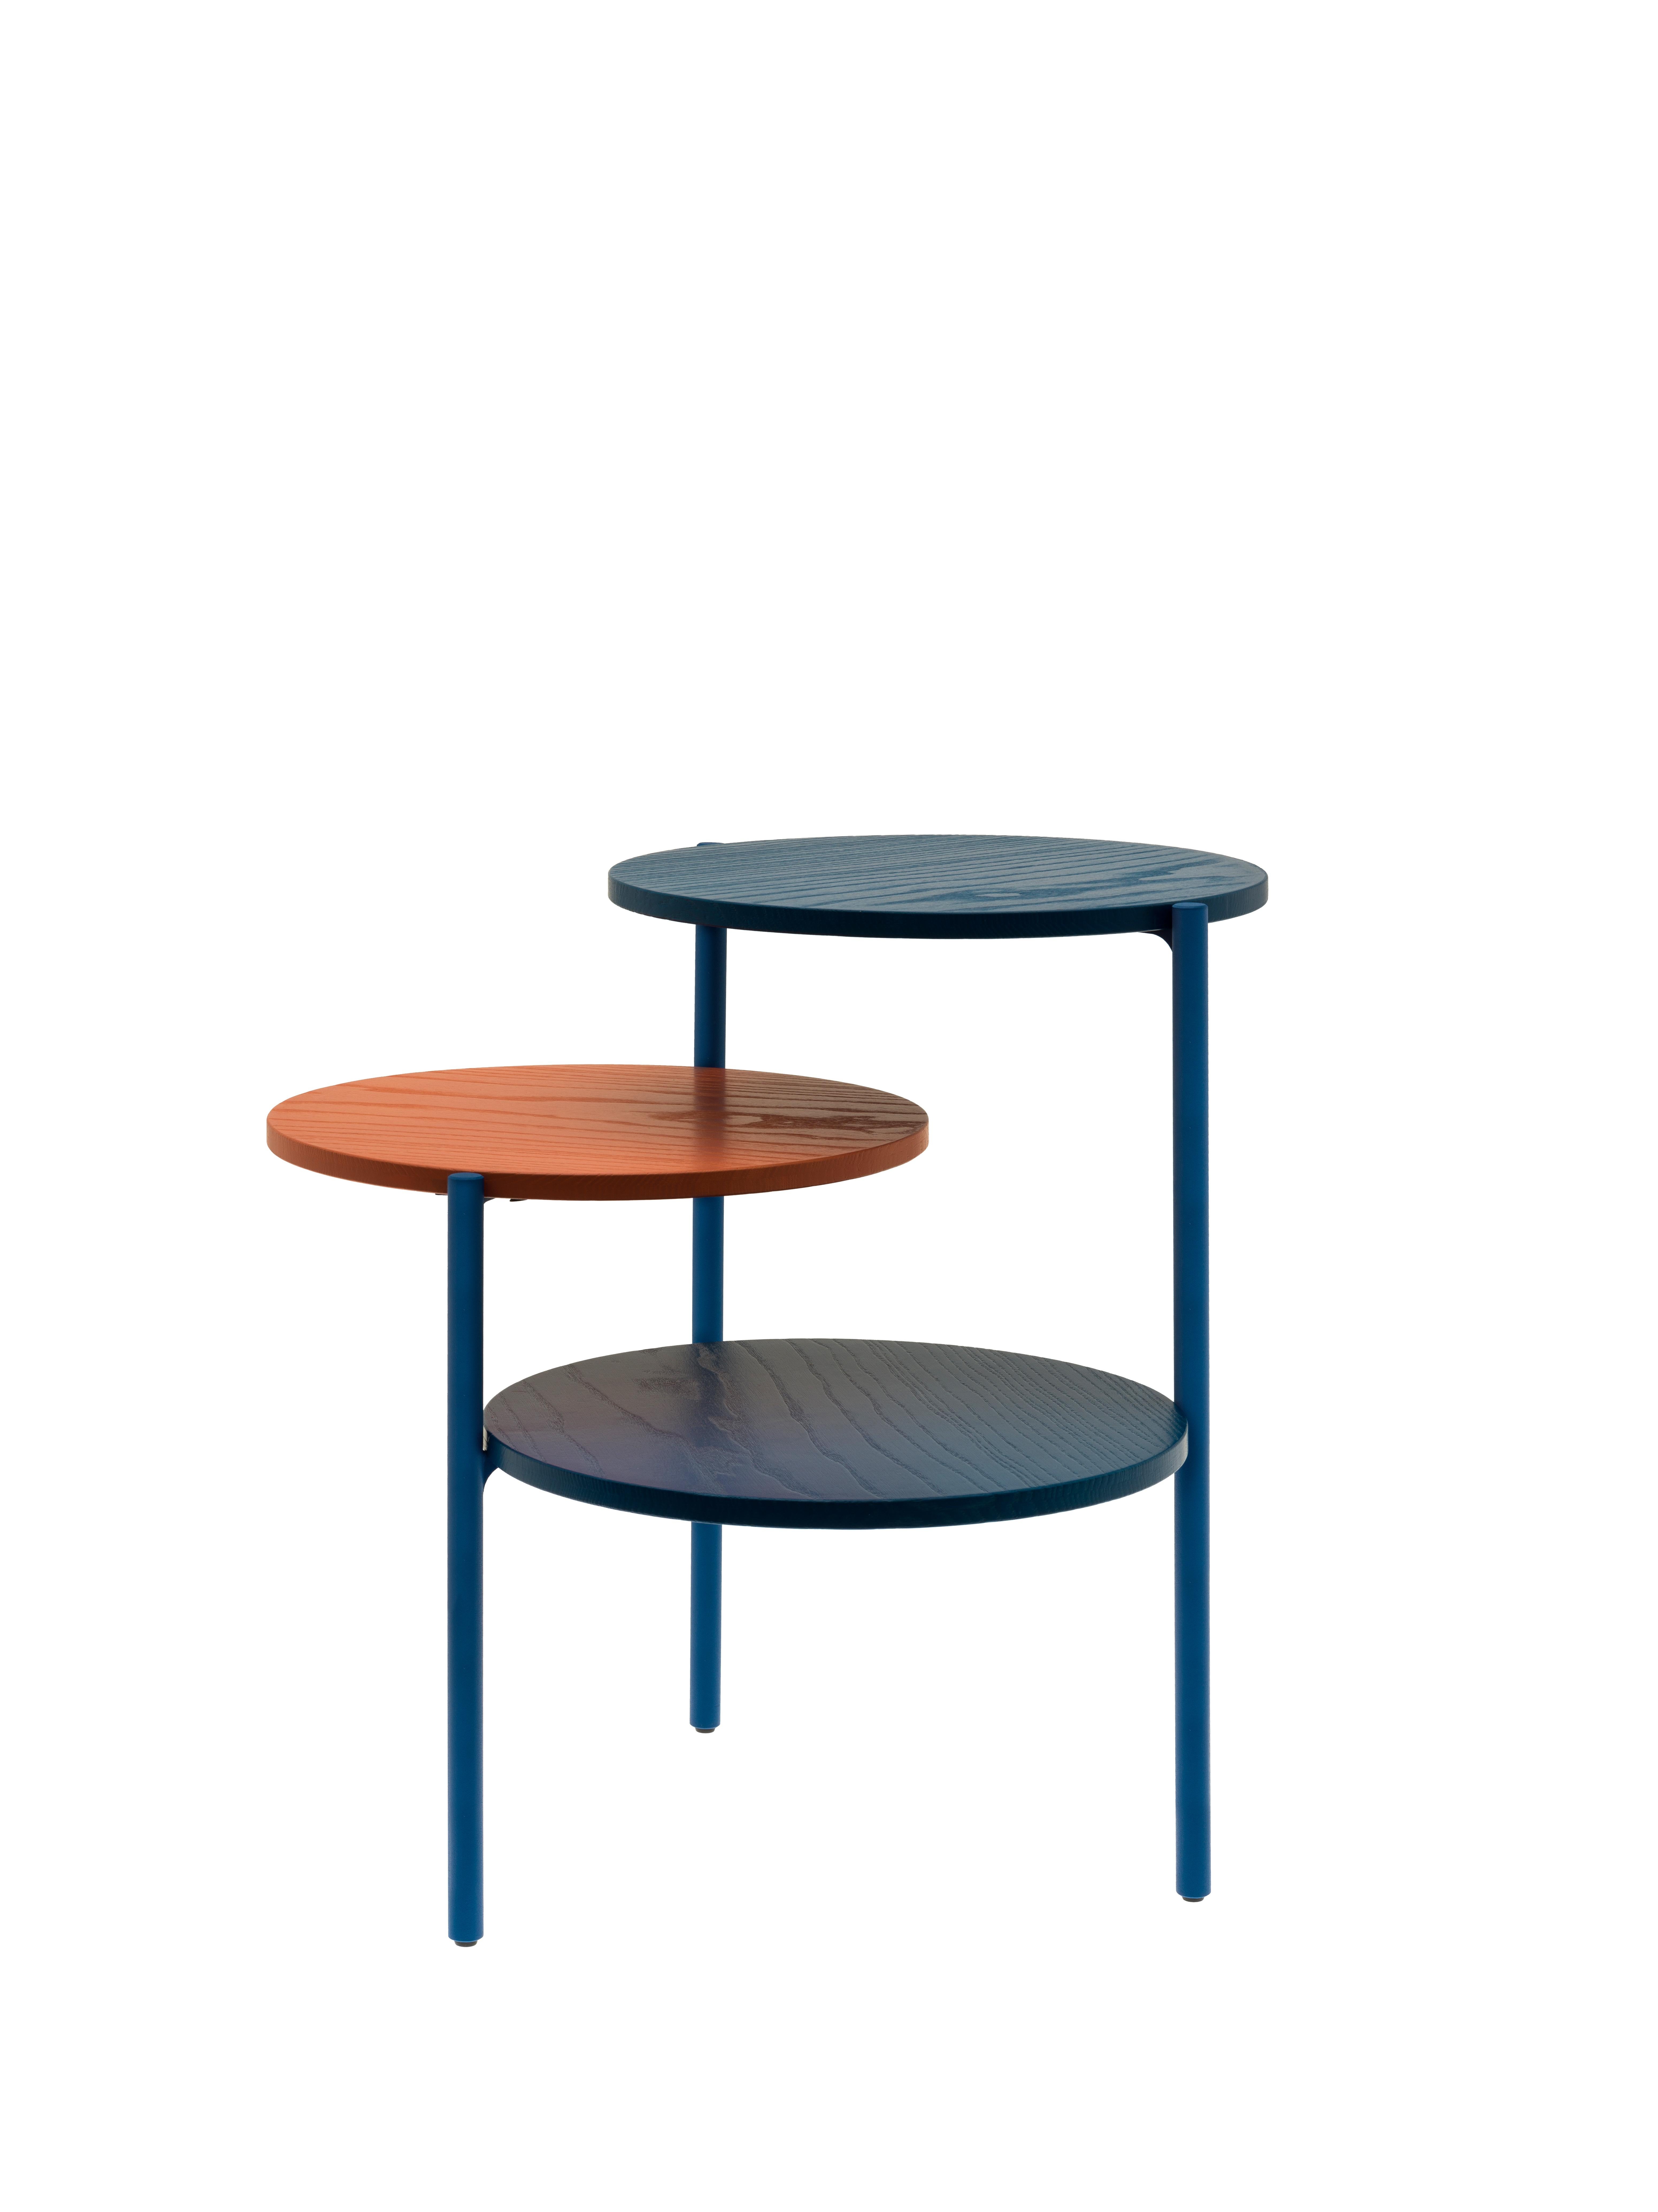 Paire de tables triples bleues et corail par Mason Editions
Dimensions : 54 × 54 × 52,5 cm
MATERIAL : fer, frêne
Couleurs : noir total, bleu total, gris clair total, bleu + corail, noir + gris clair, gris clair + citrouille

Cette table d'appoint